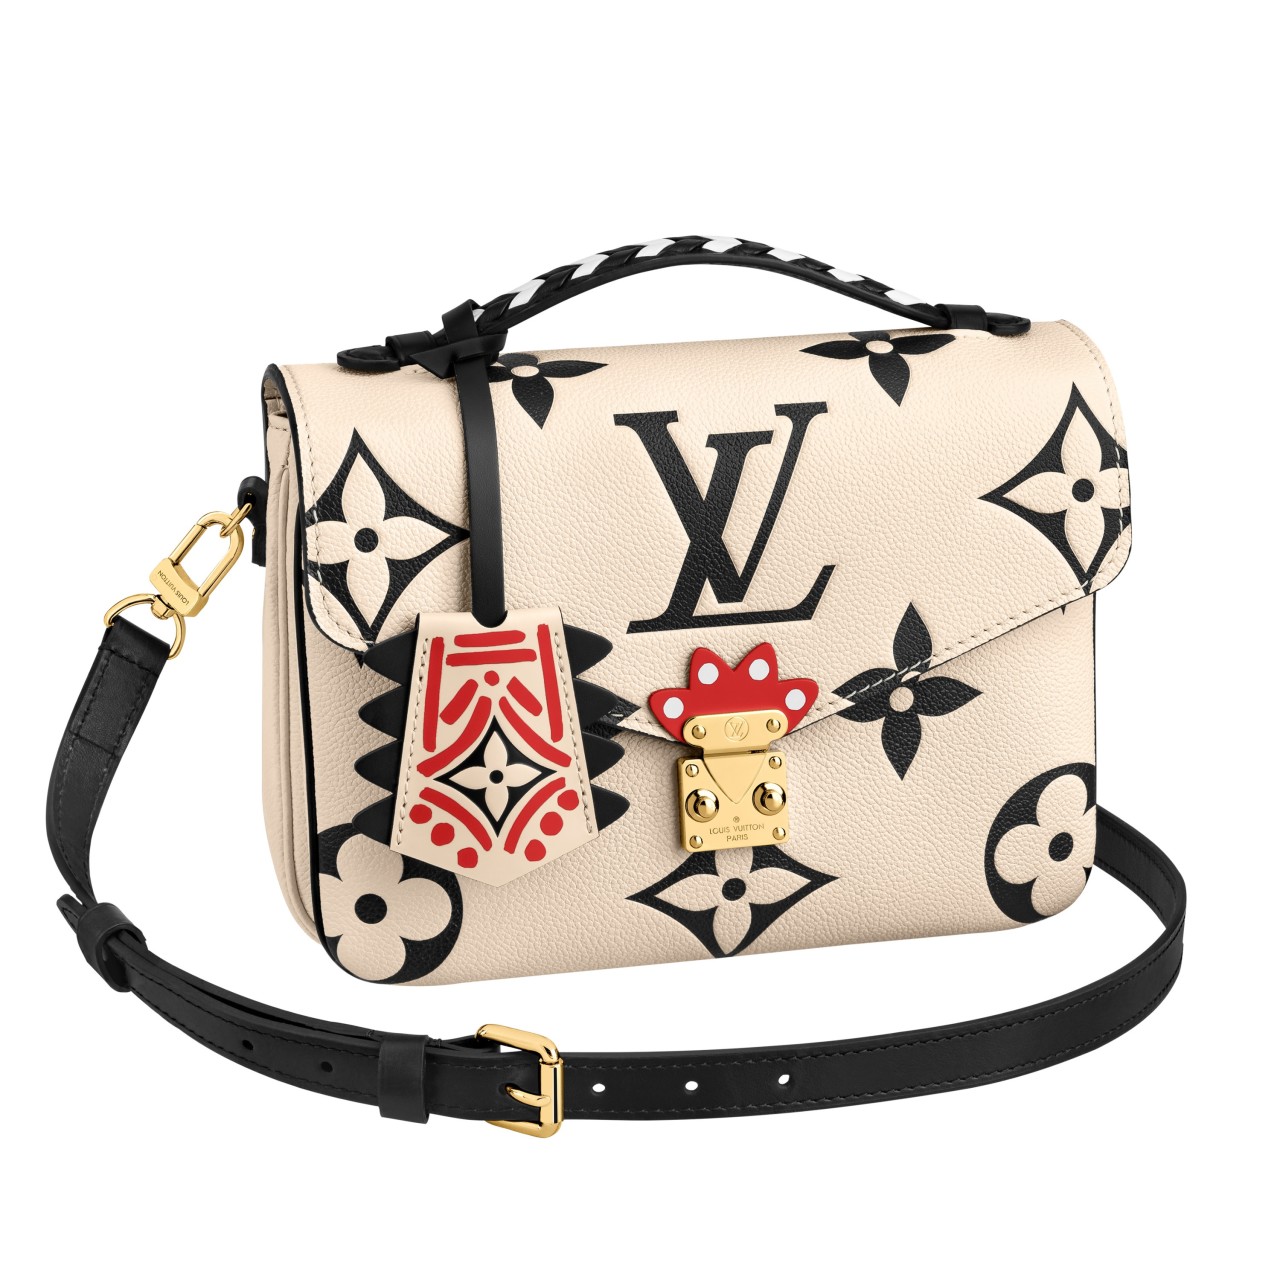 Louis Vuitton」の新カプセルコレクション “LV クラフティ” が発売 